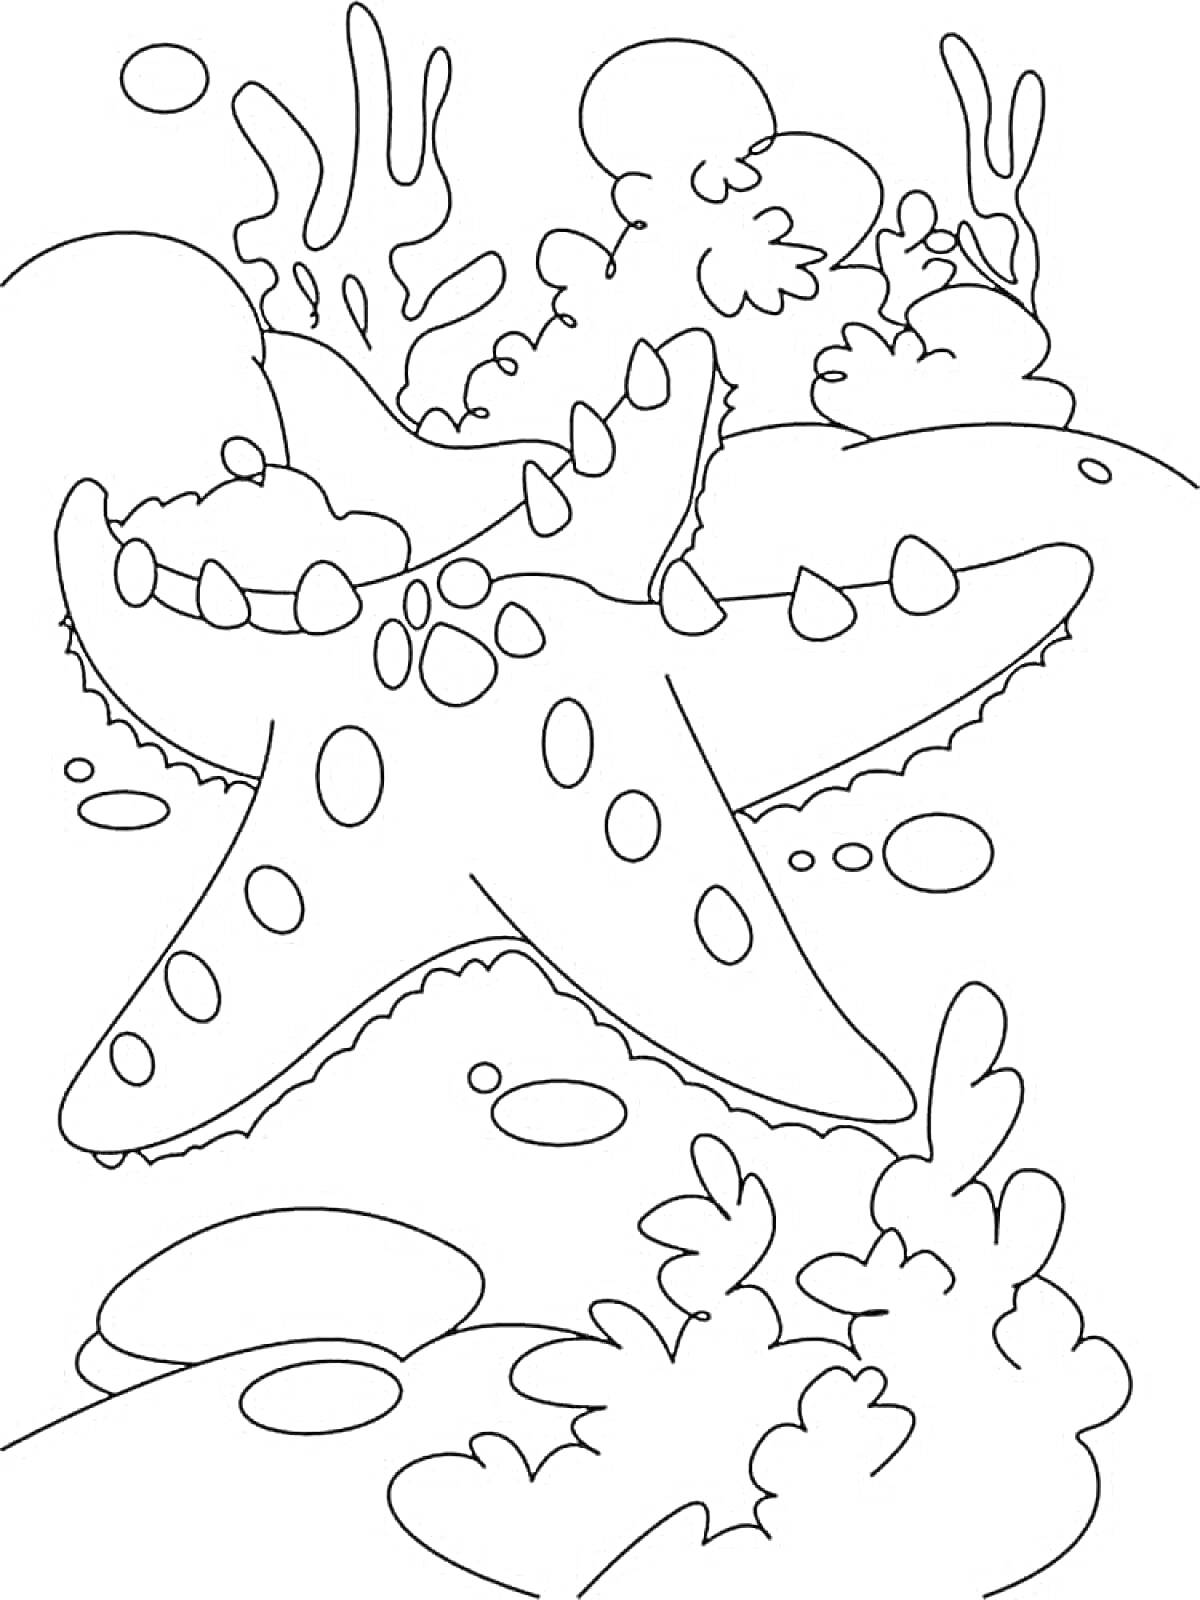 Раскраска Морская звезда среди кораллов и подводных растений